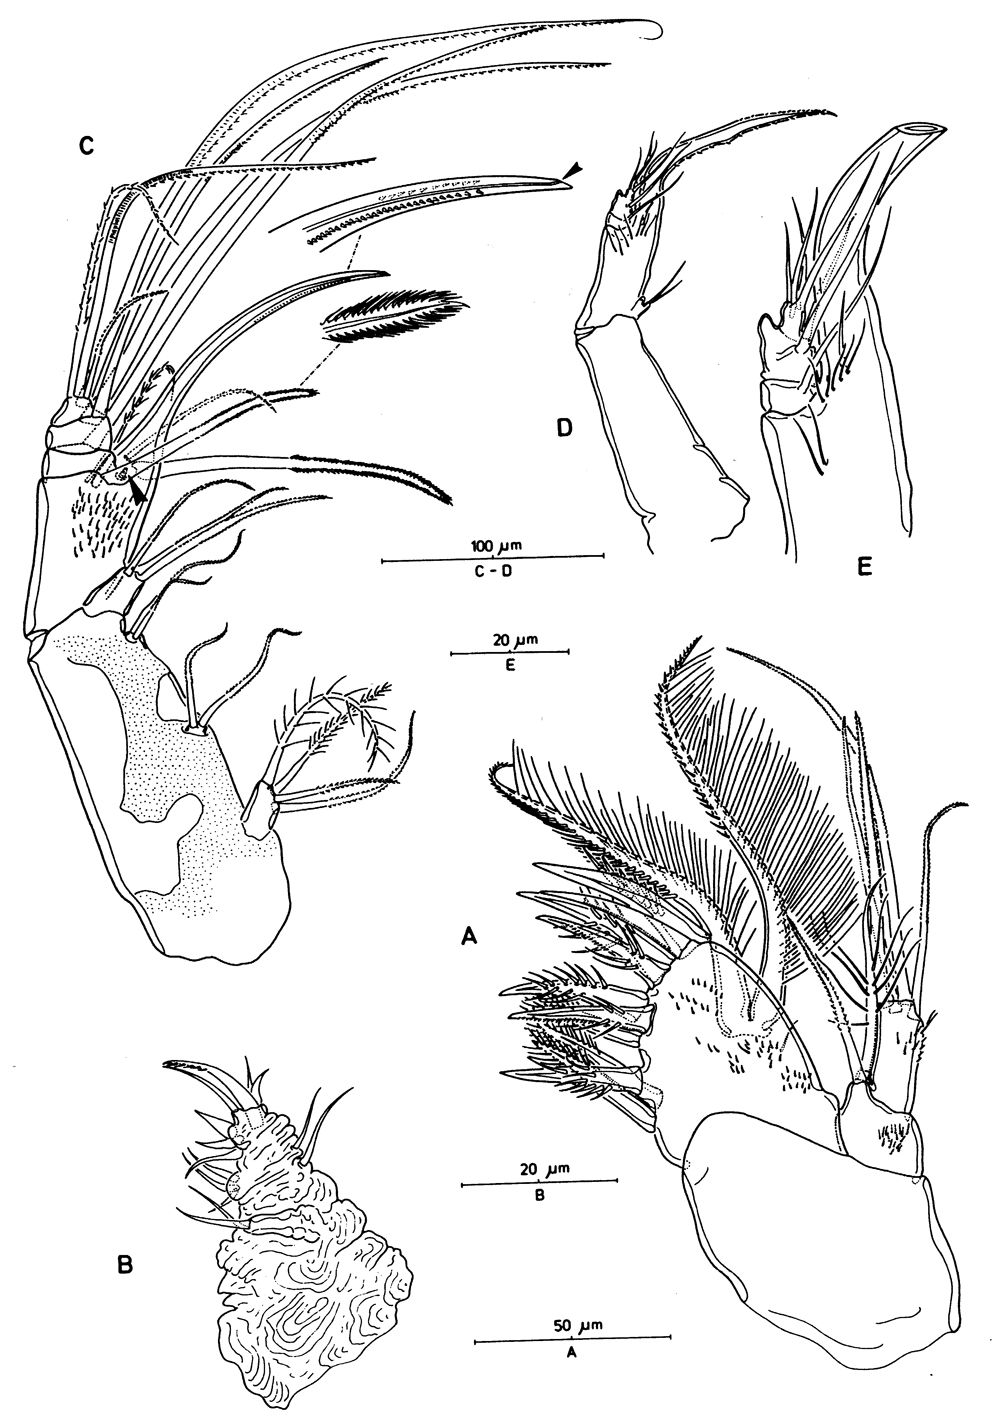 Species Aegisthus mucronatus - Plate 7 of morphological figures